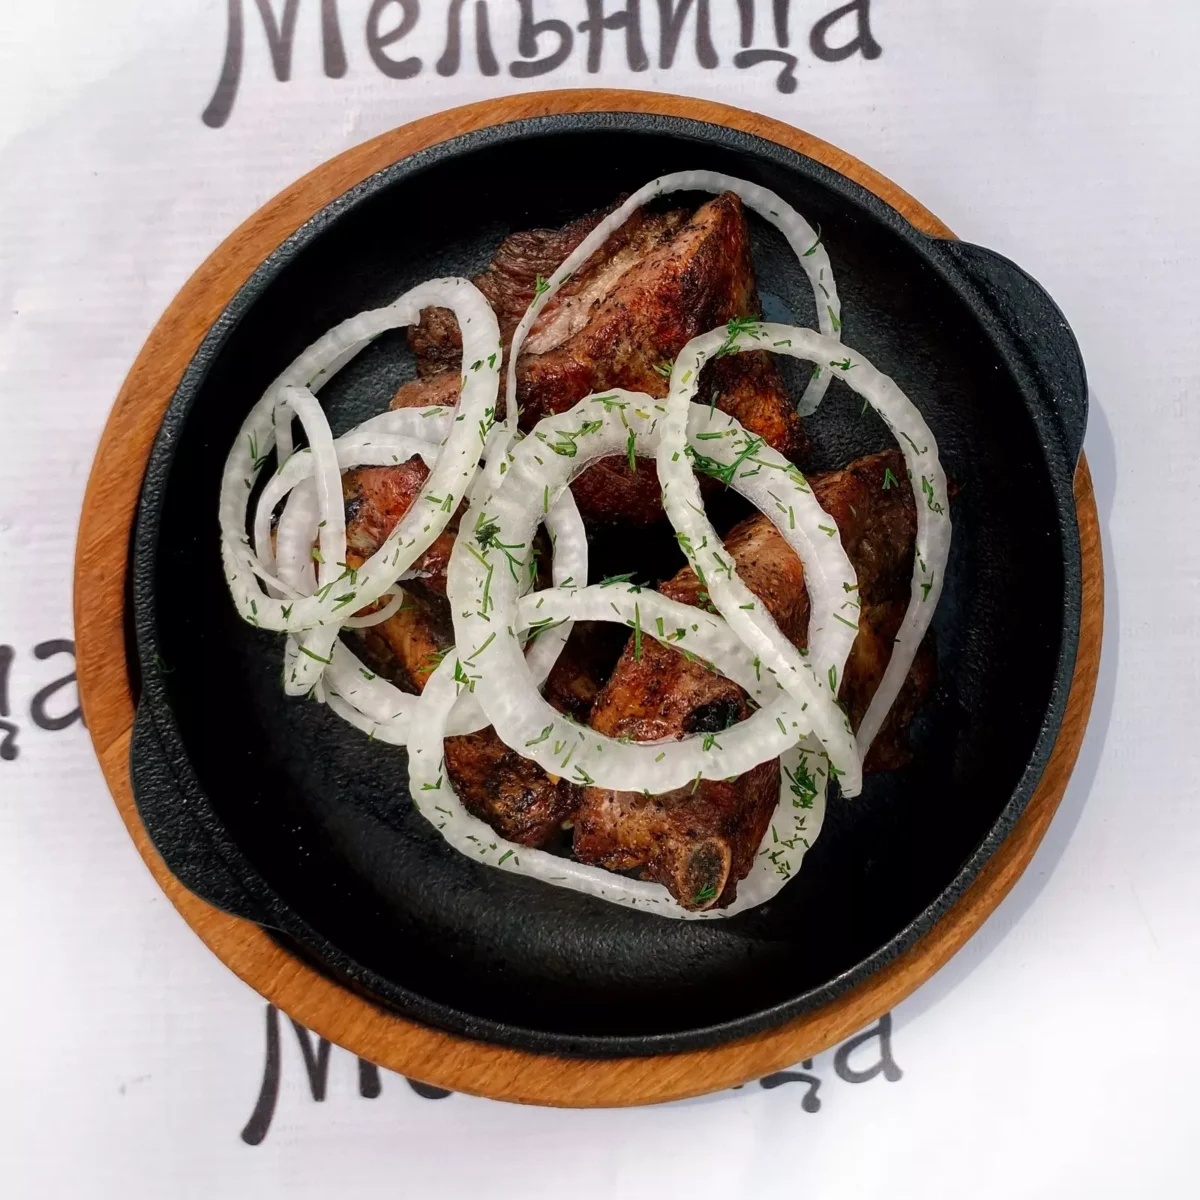 From pork ribs • "Melnitsa" restaurant, Kharkiv